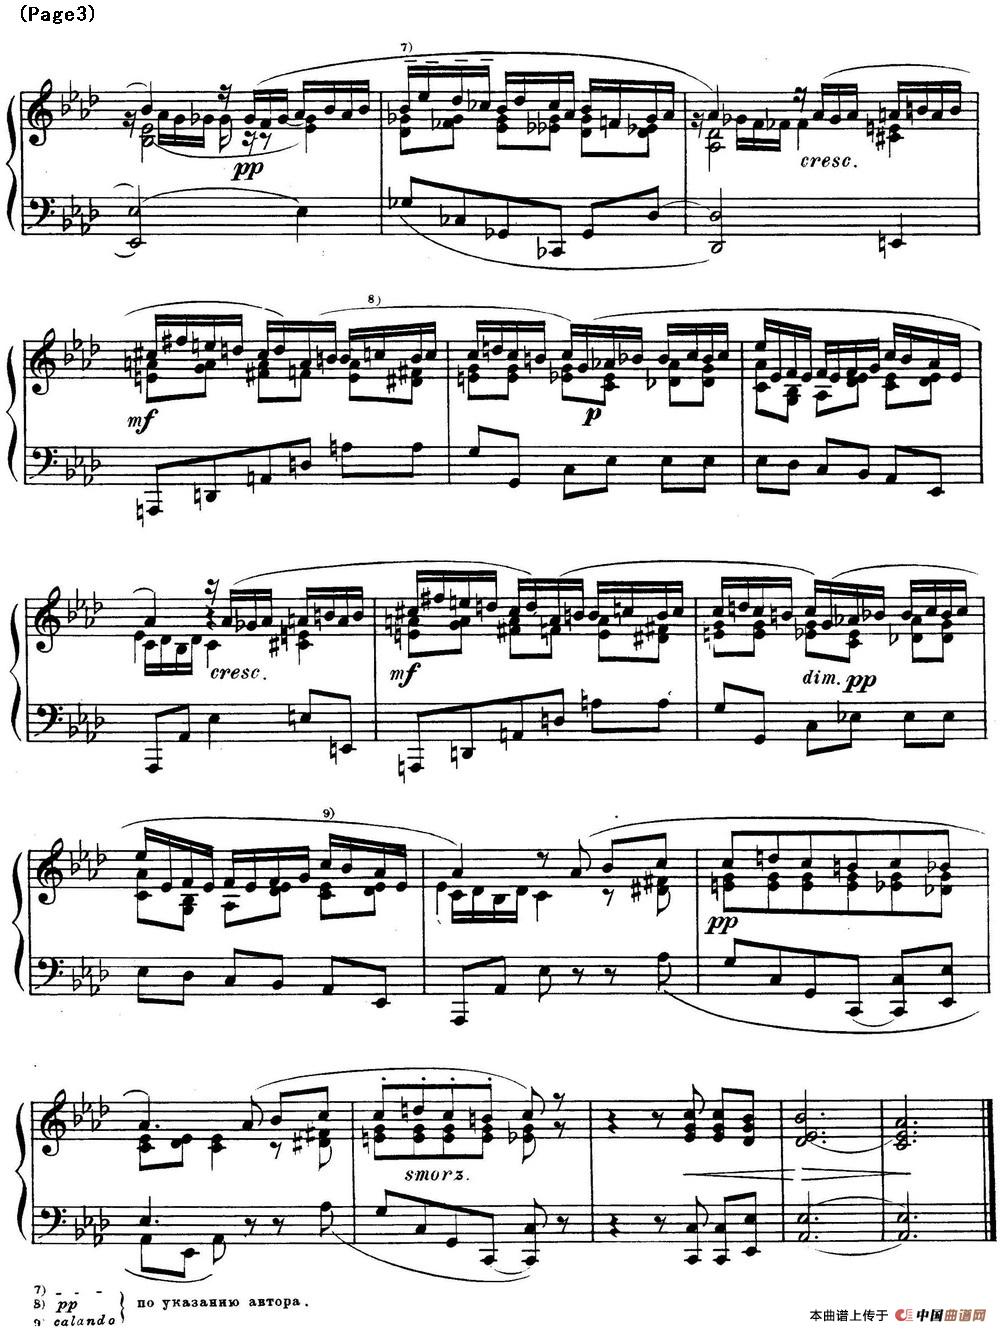 斯克里亚宾12首钢琴练习曲 Op8（No.8 Alexander Scriabin Etudes）(1)_Scriabin Etude Op.8 No.8_页面_4.jpg